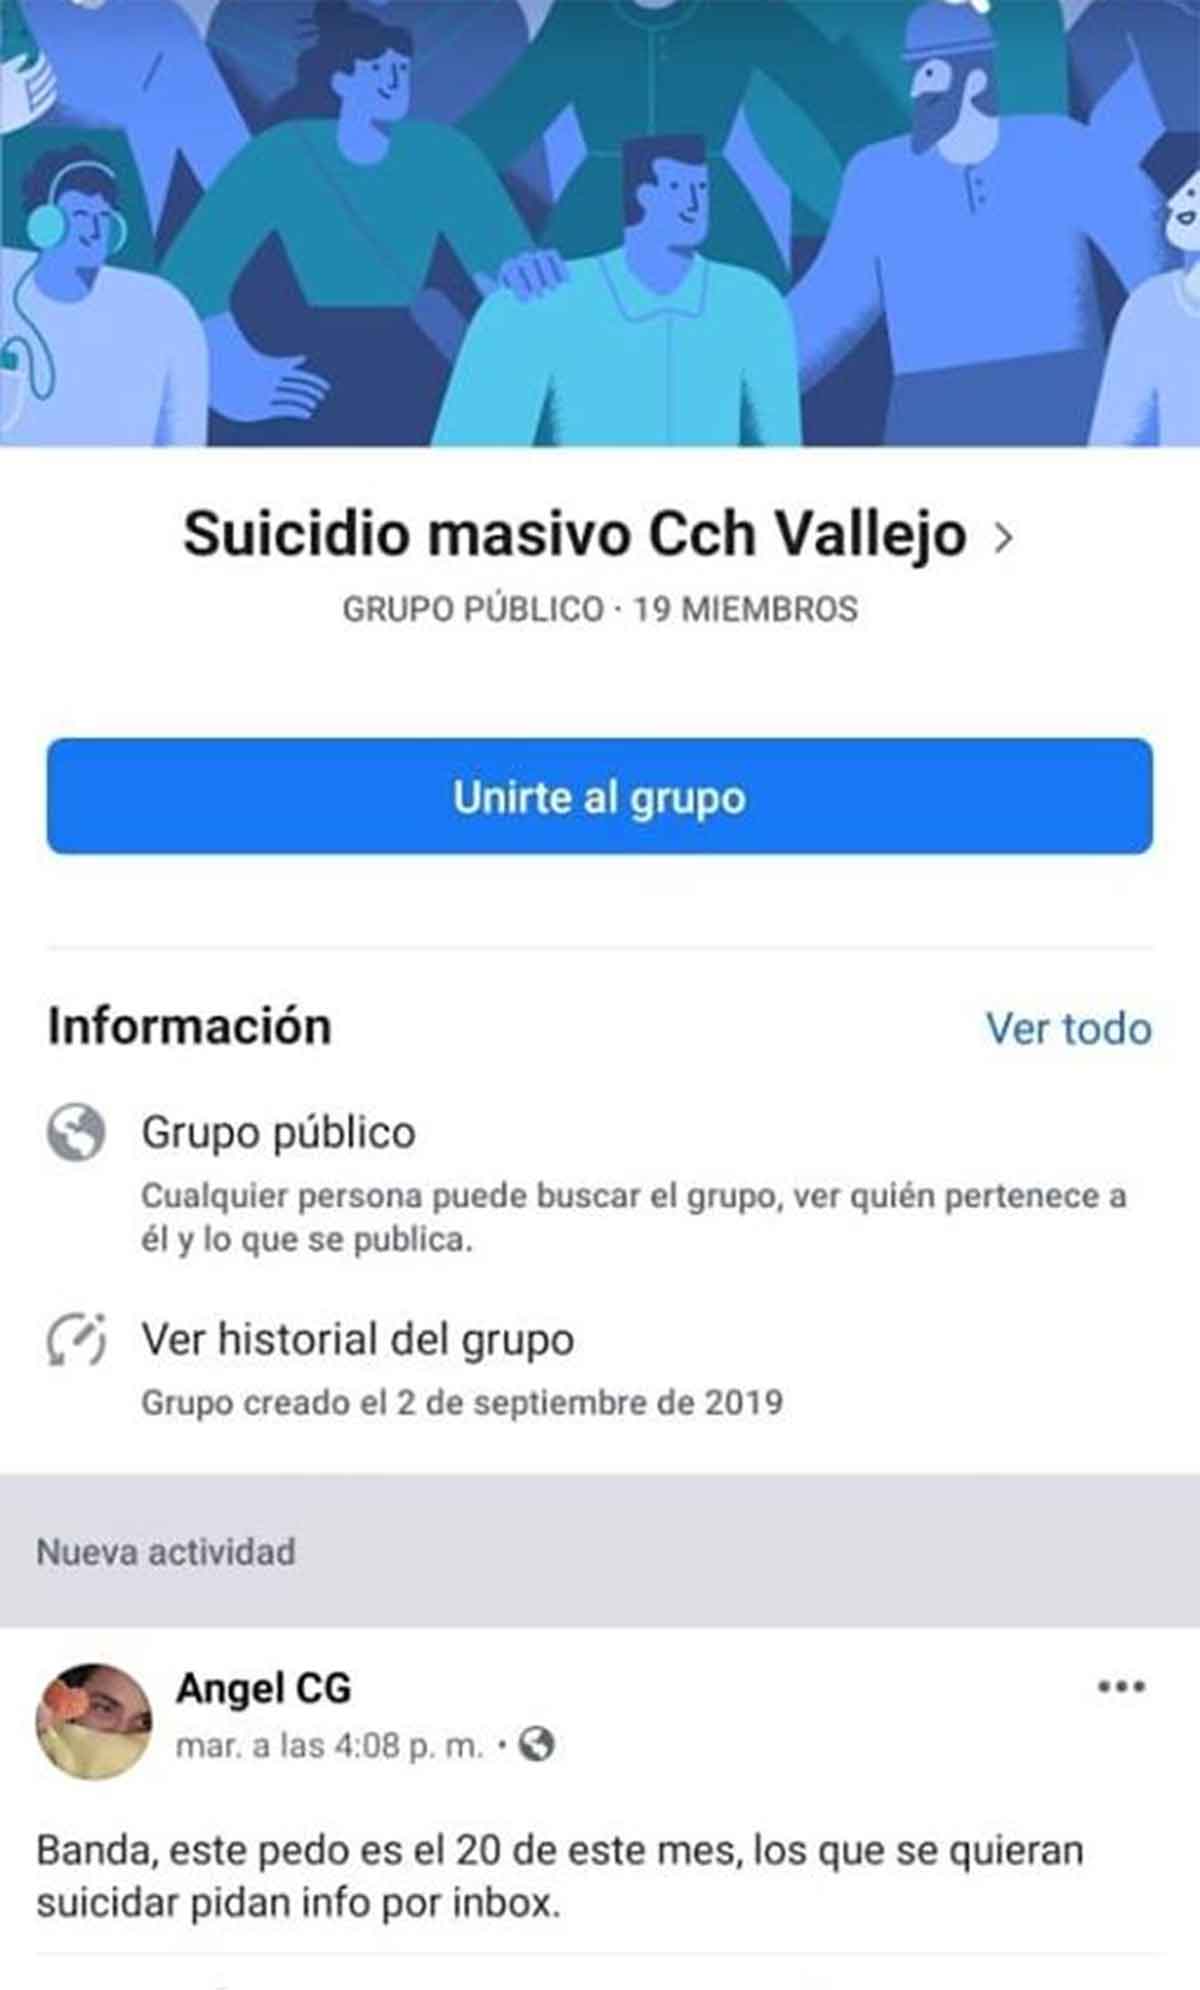 suicidio colectivo cch vallejo1 1